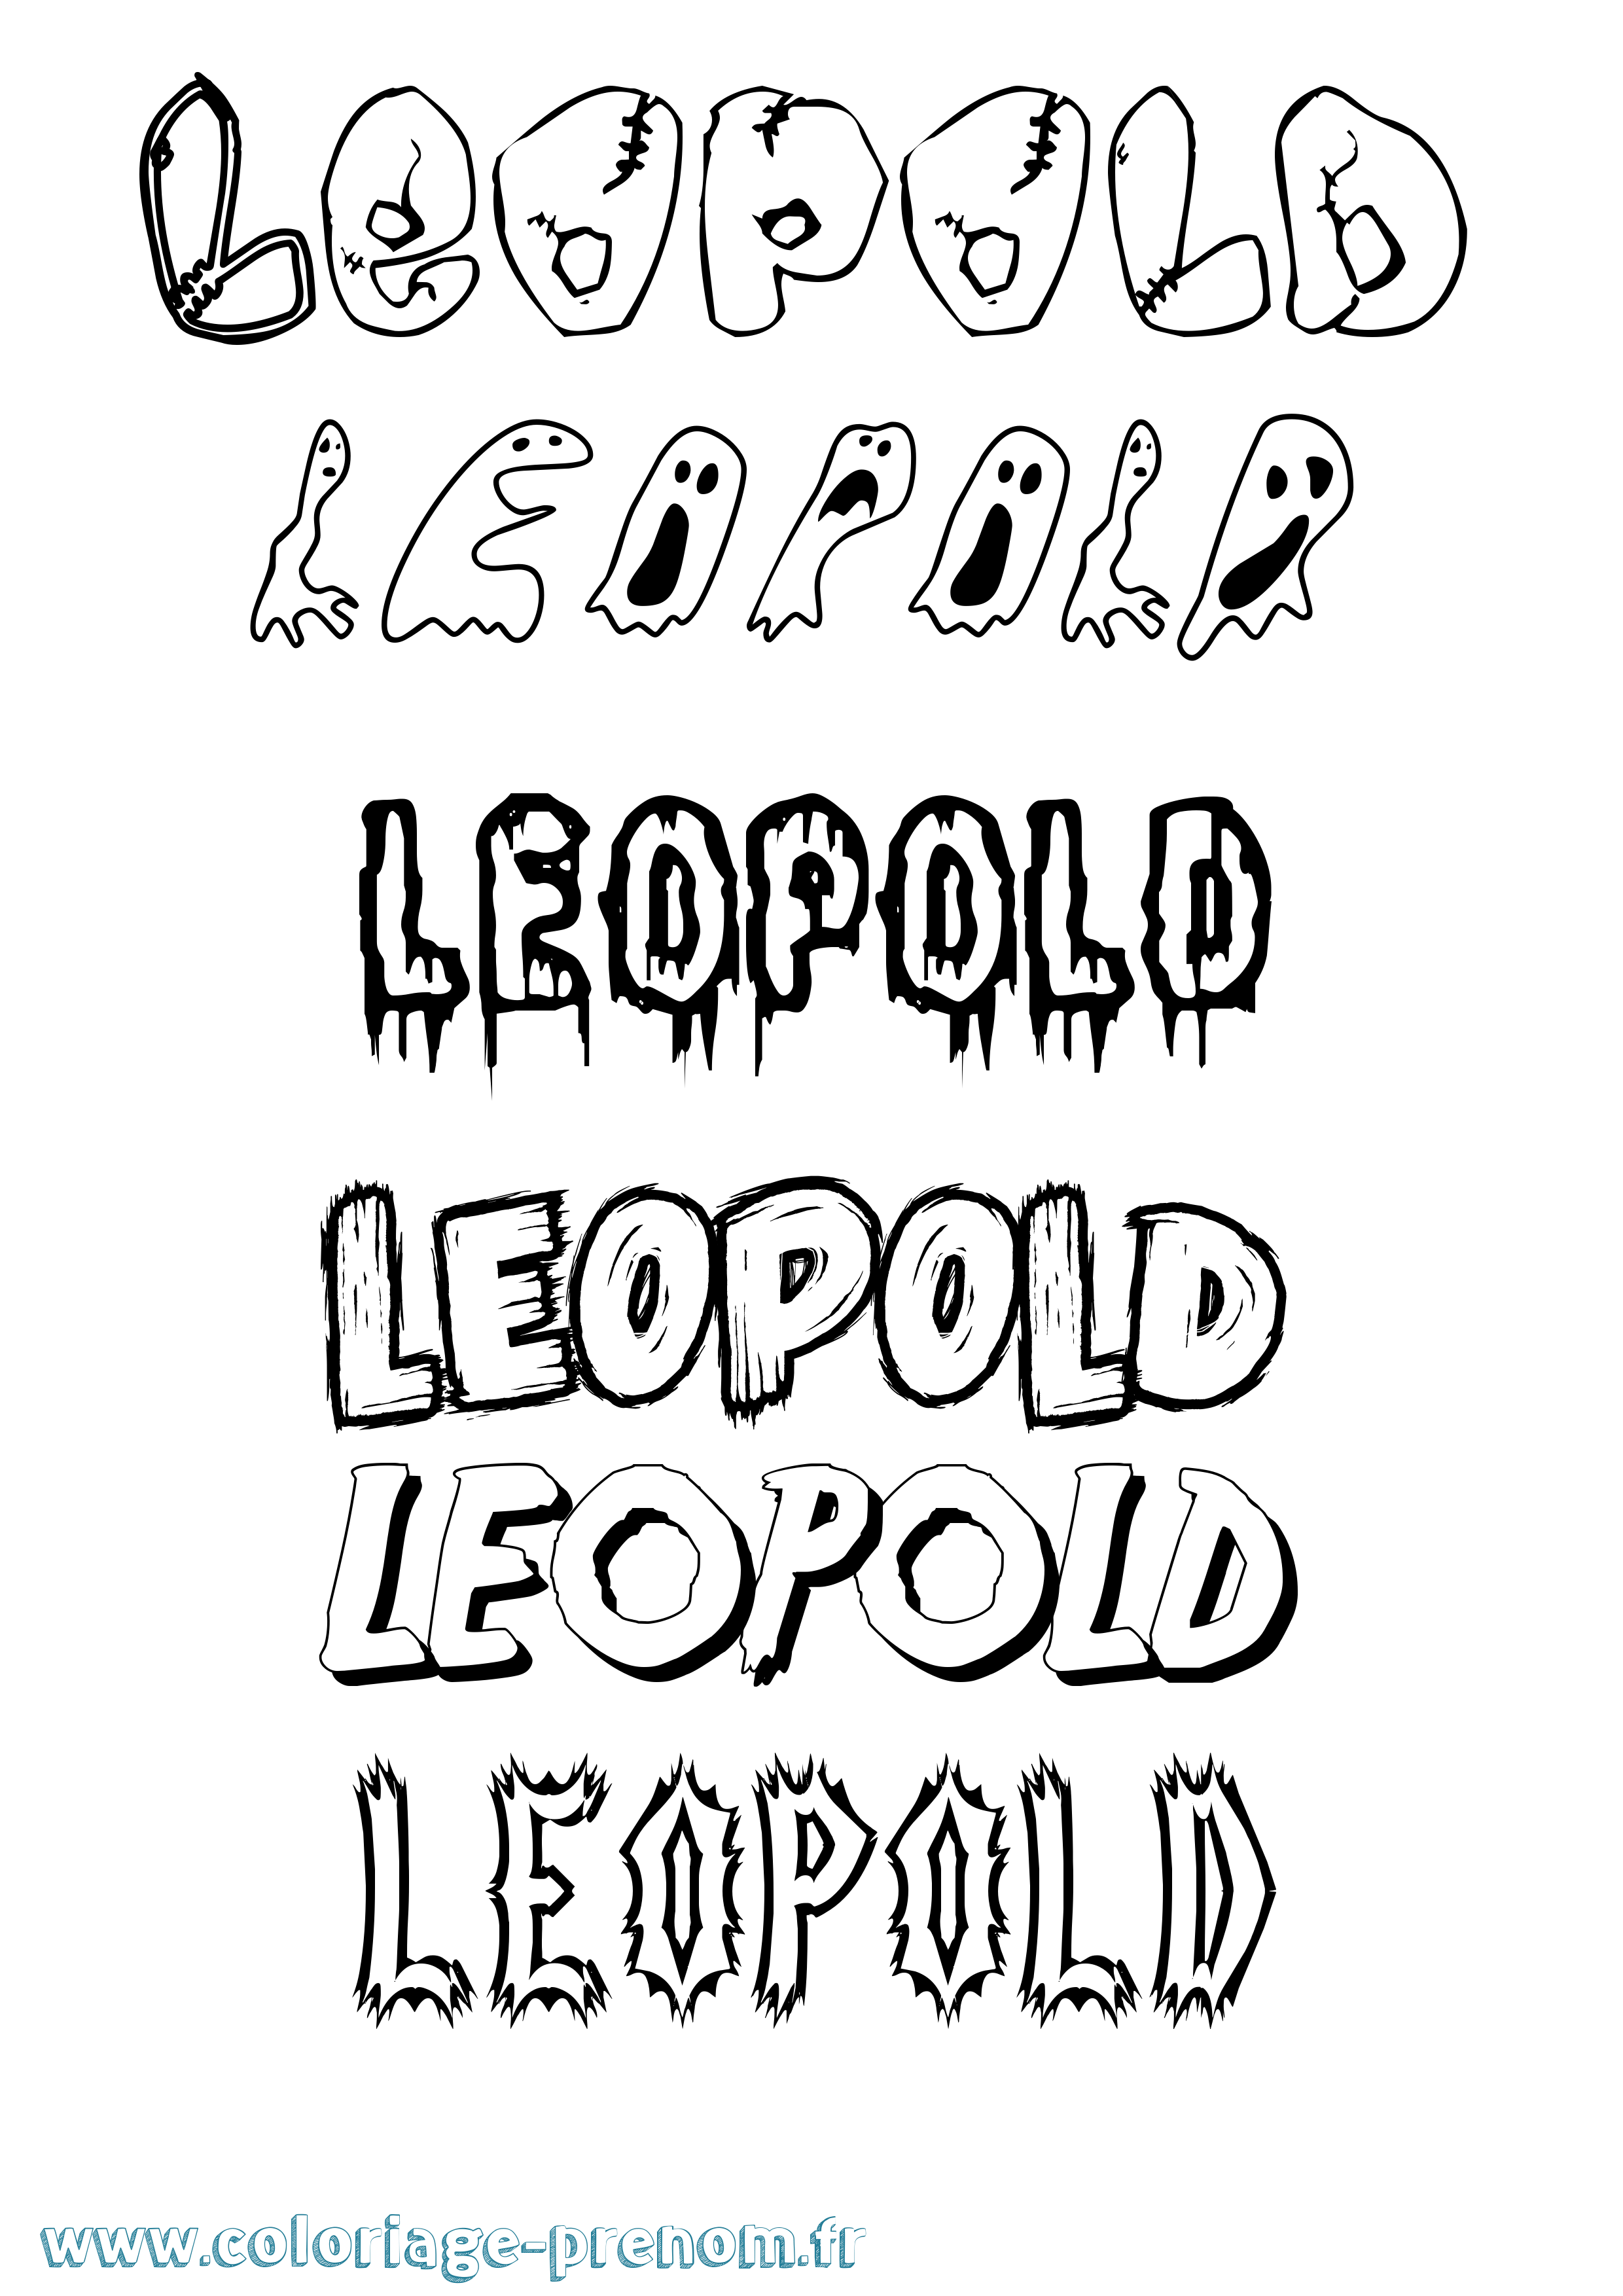 Coloriage prénom Leopold Frisson